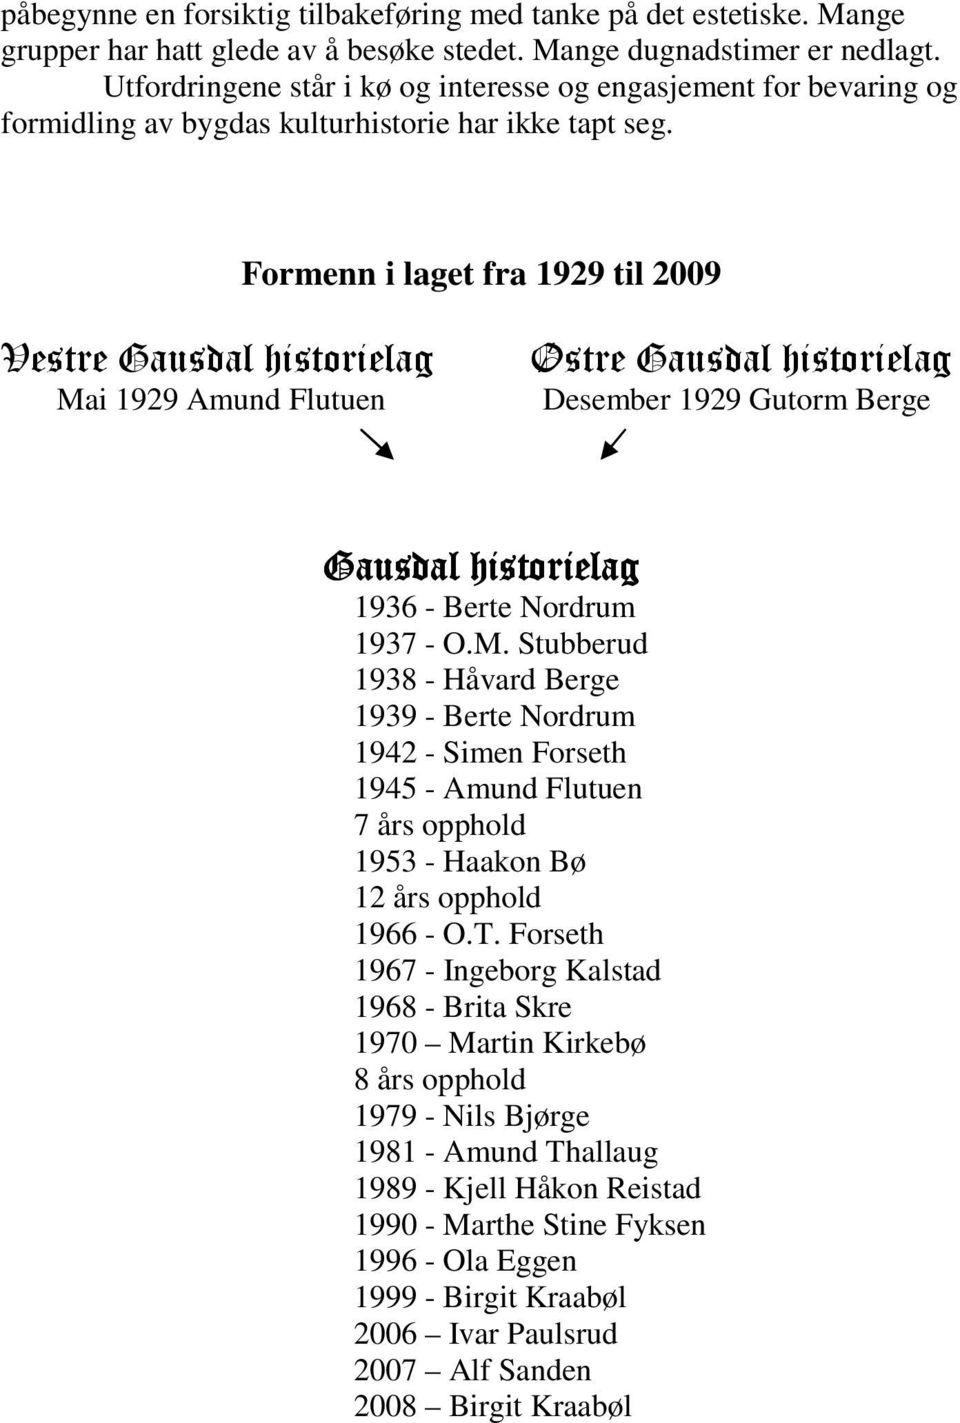 Formenn i laget fra 1929 til 2009 Vestre Gausdal historielag Ma